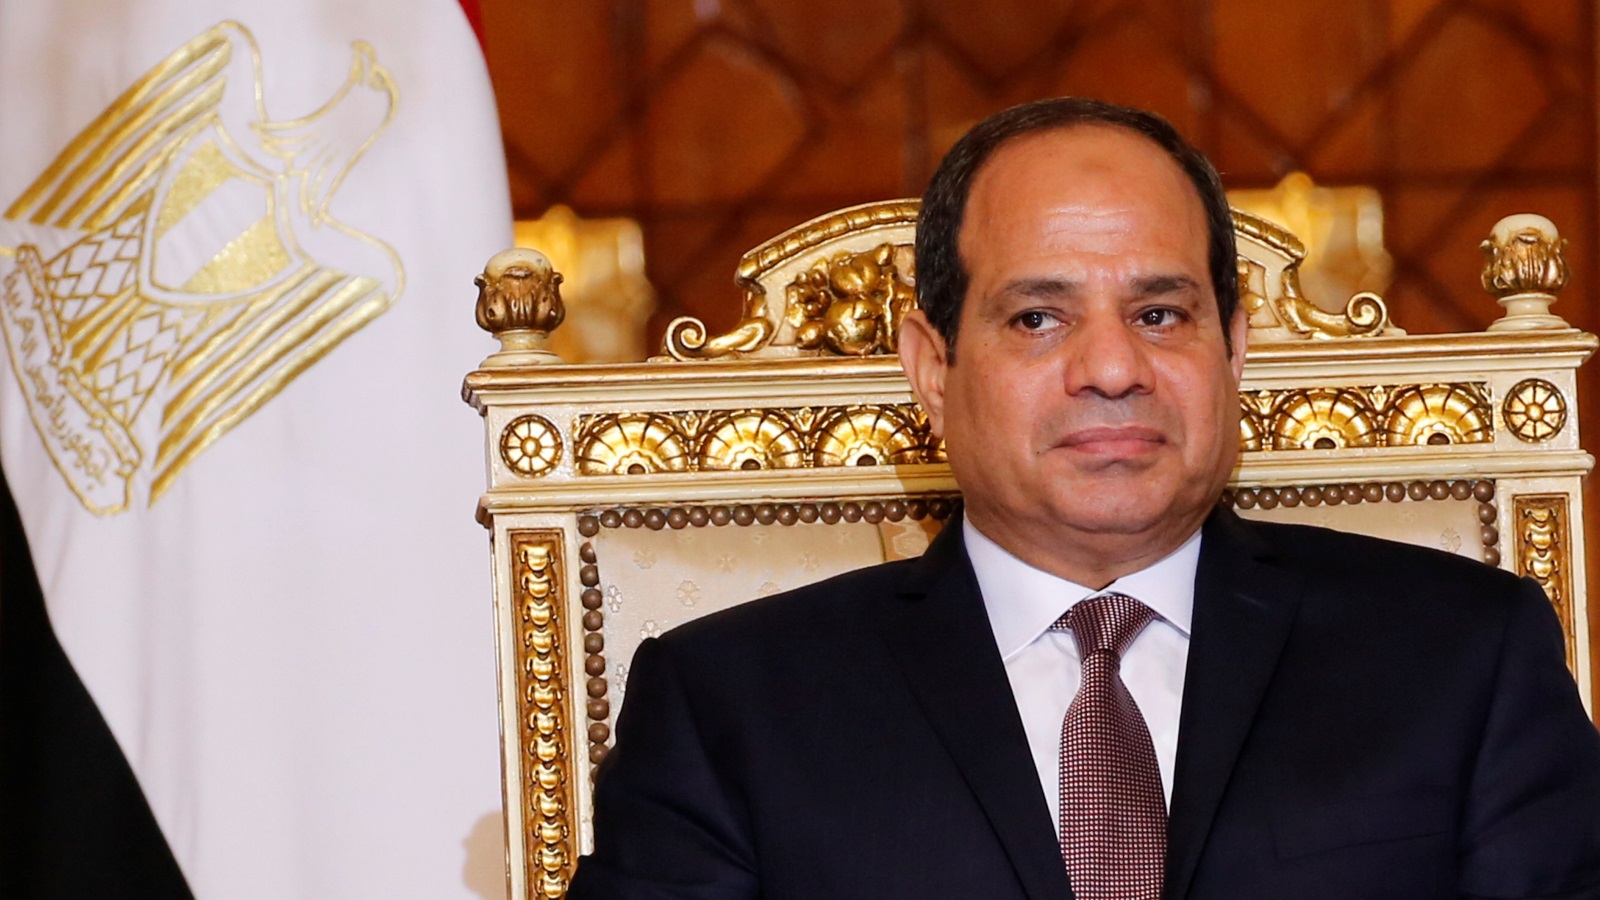 قامت الحكومة المصرية بالتعاقد مع جماعات ضغط أمريكية للتسويق لمصر، وتقديم السيسي كزعيم عربي نموذجي للغرب (رويترز)